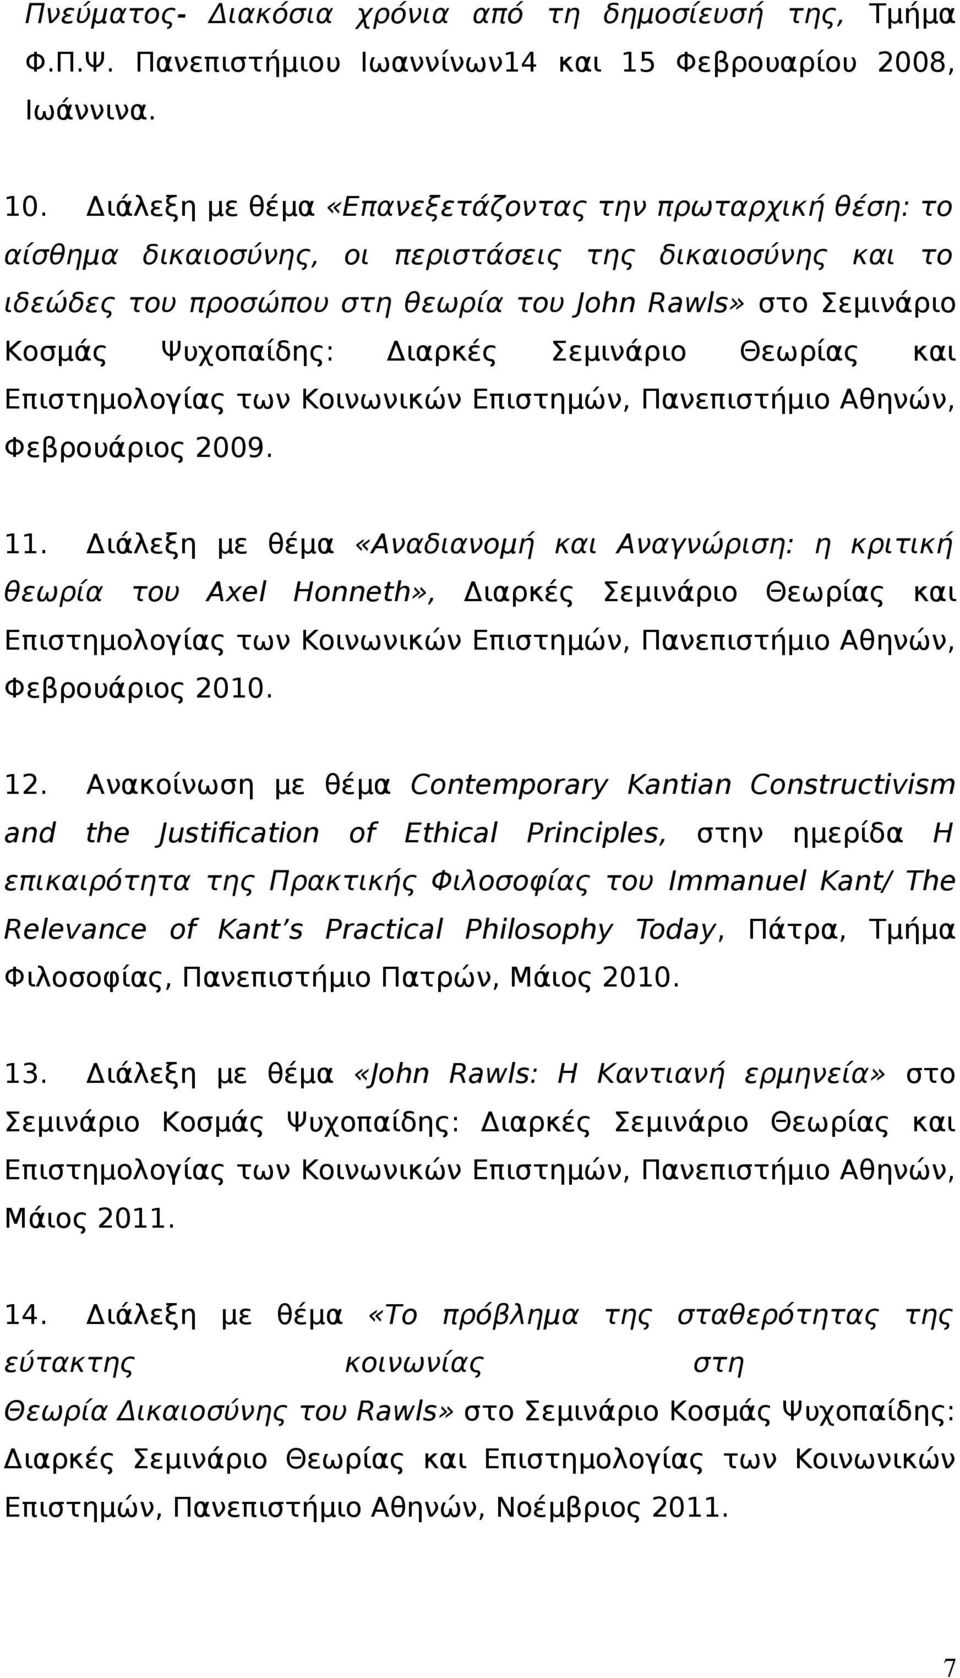 Διαρκές Σεμινάριο Θεωρίας και Επιστημολογίας των Κοινωνικών Επιστημών, Πανεπιστήμιο Αθηνών, Φεβρουάριος 2009. 11.